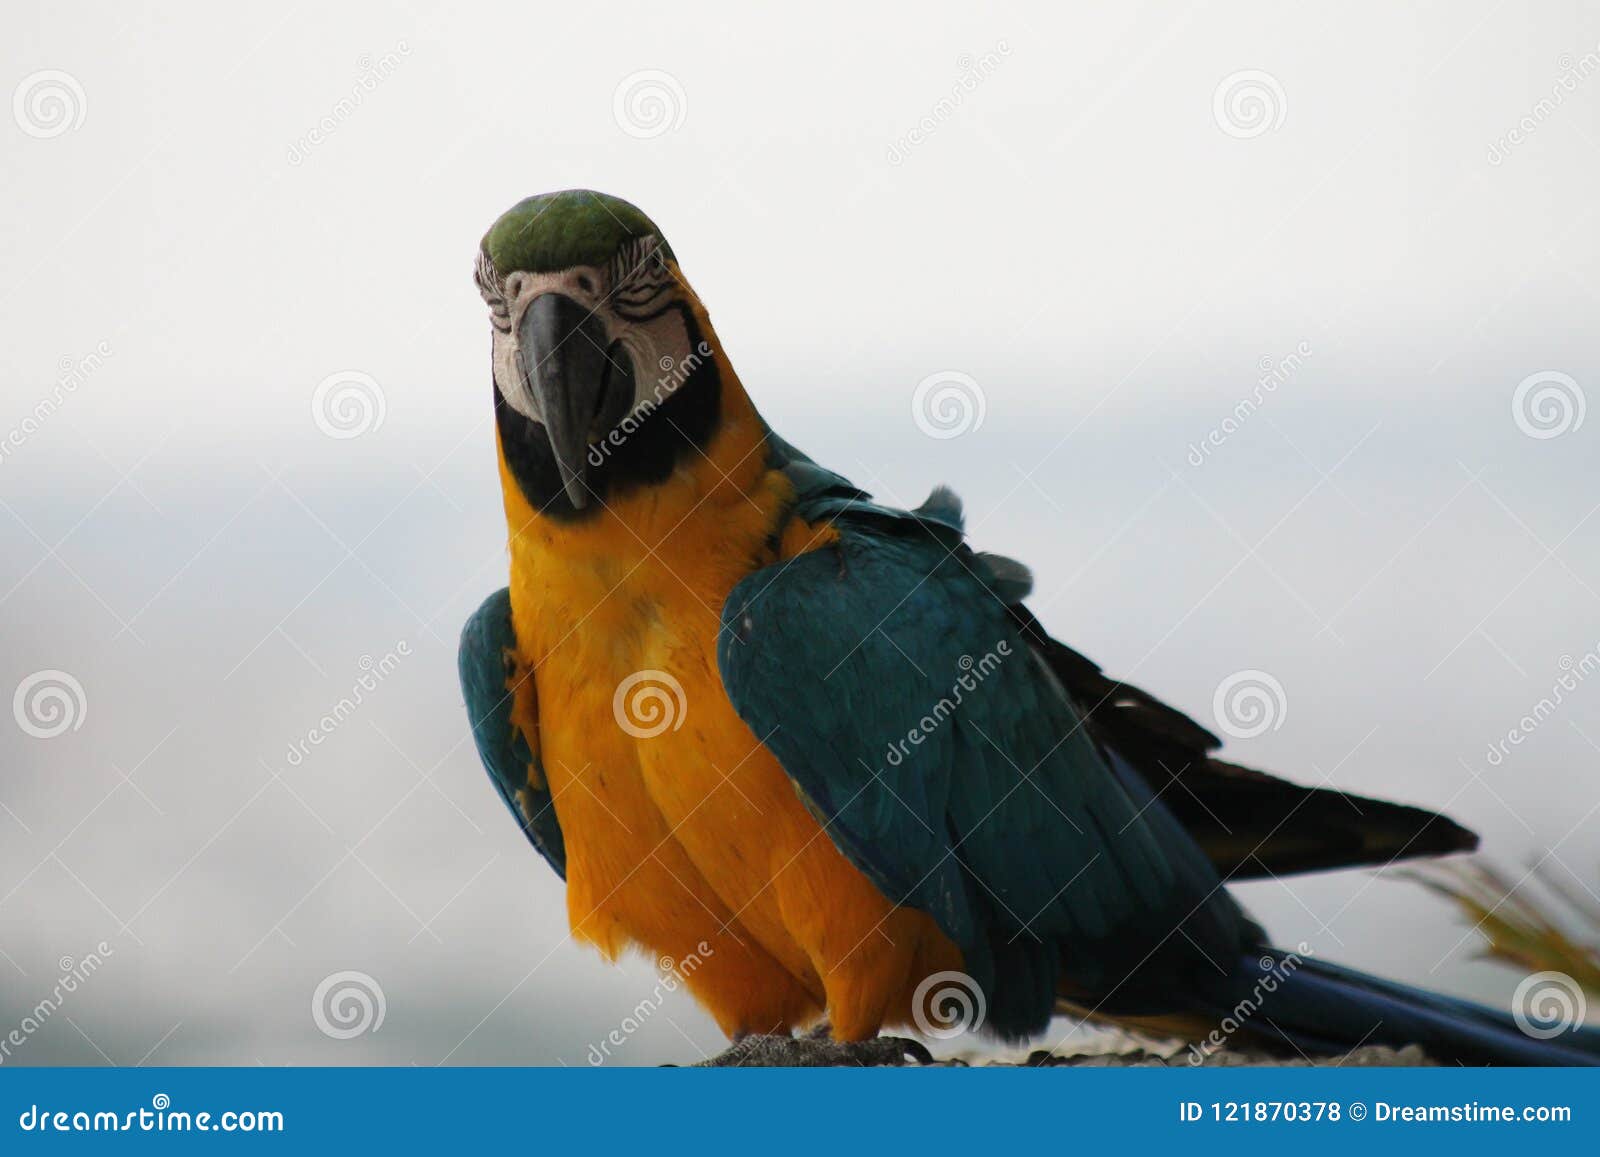 venezuelan guacamaya bird